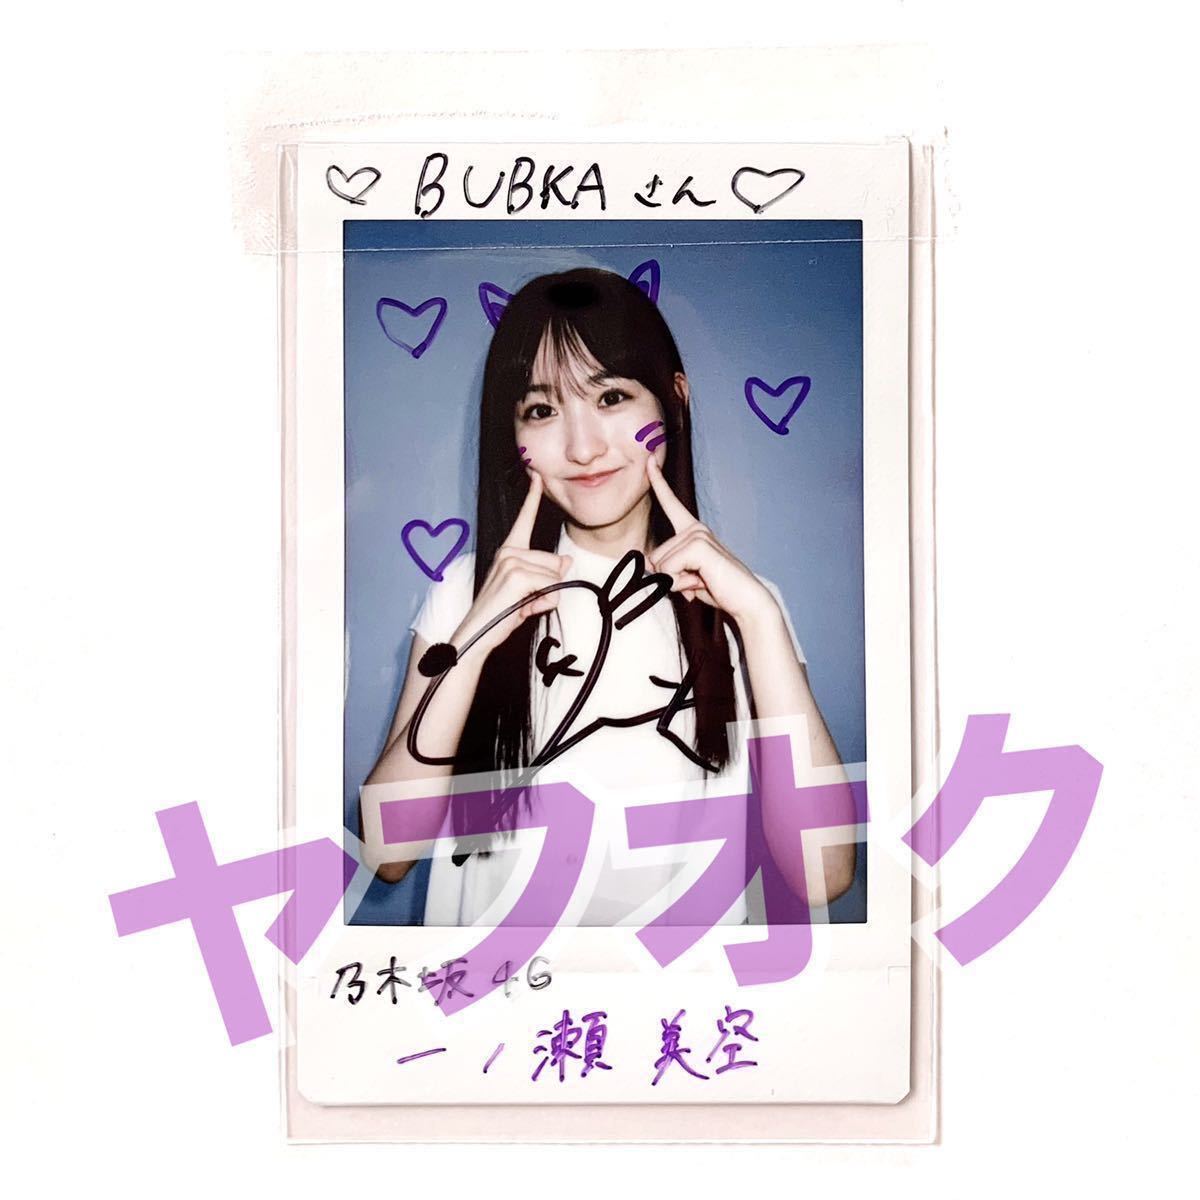  один no. прекрасный пустой Cheki автограф автограф Nogizaka 46 избранные товары . pre не продается 